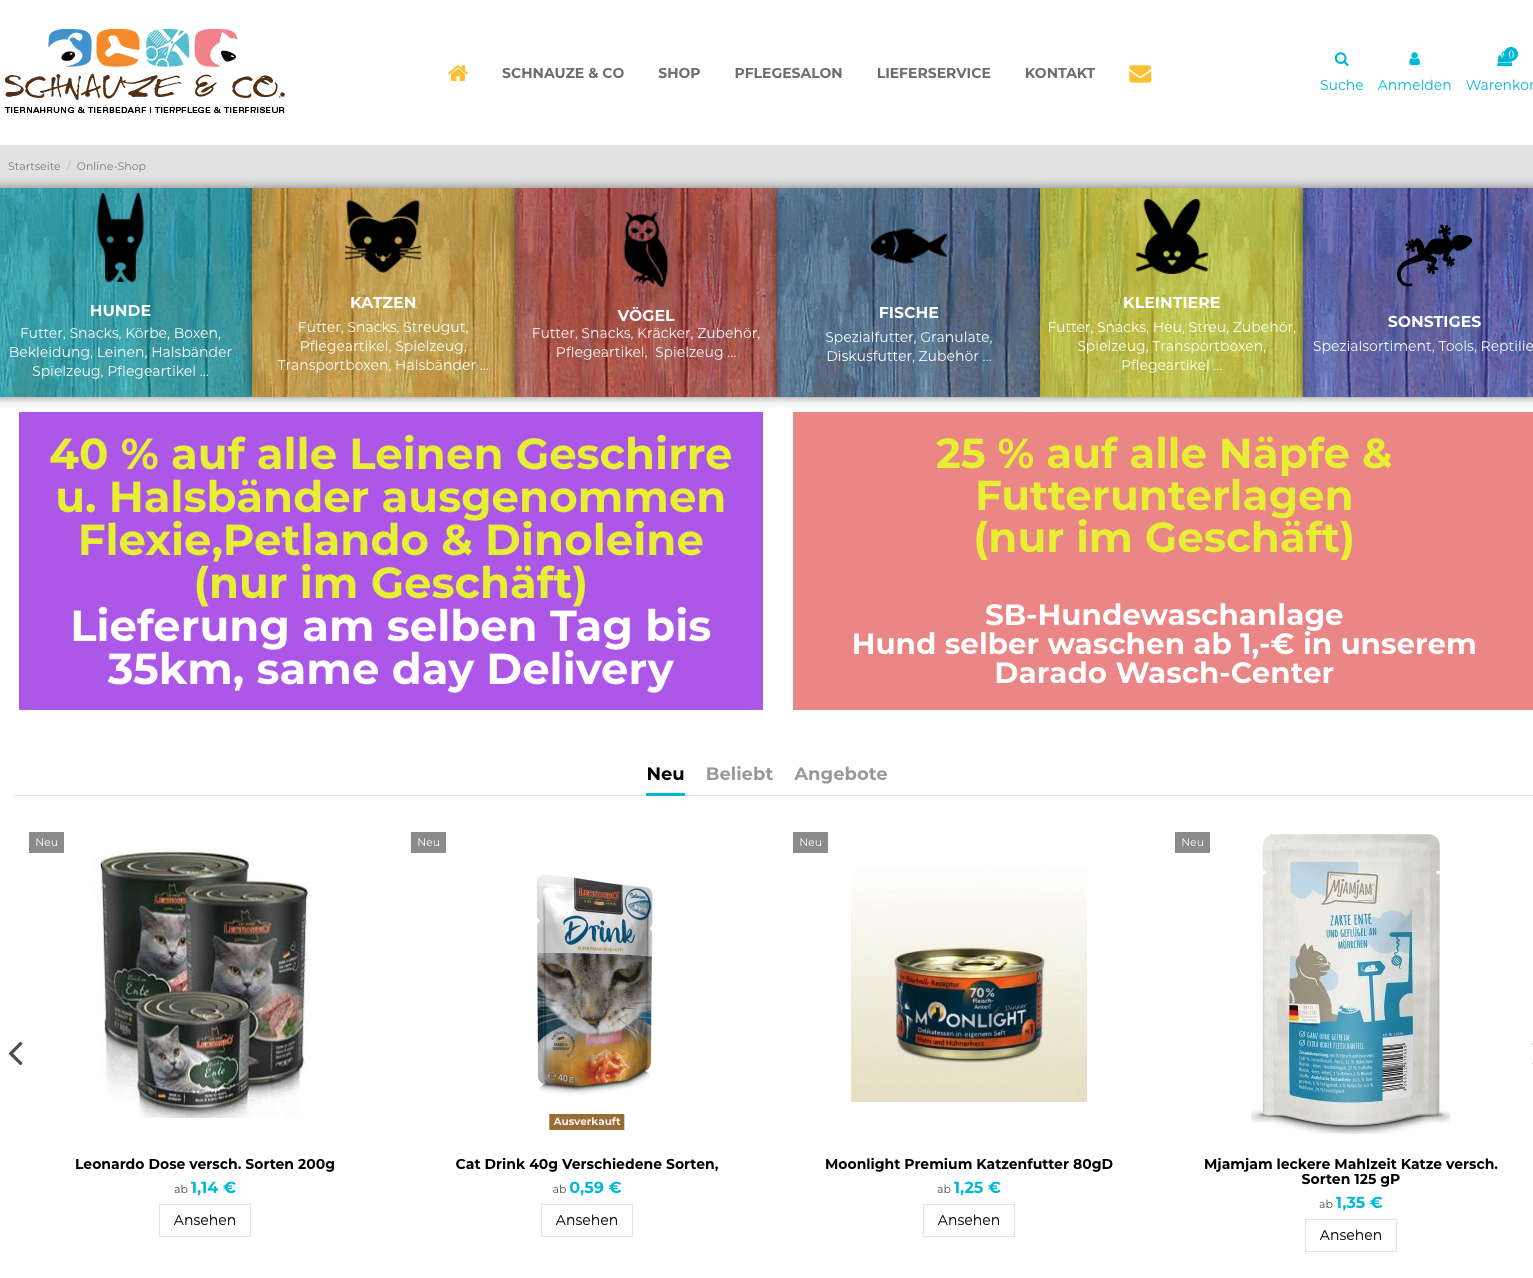 Hundesalon, Onlineshop und Hunde-Boutique von Schnauze & Co in Frankfurt am Main.